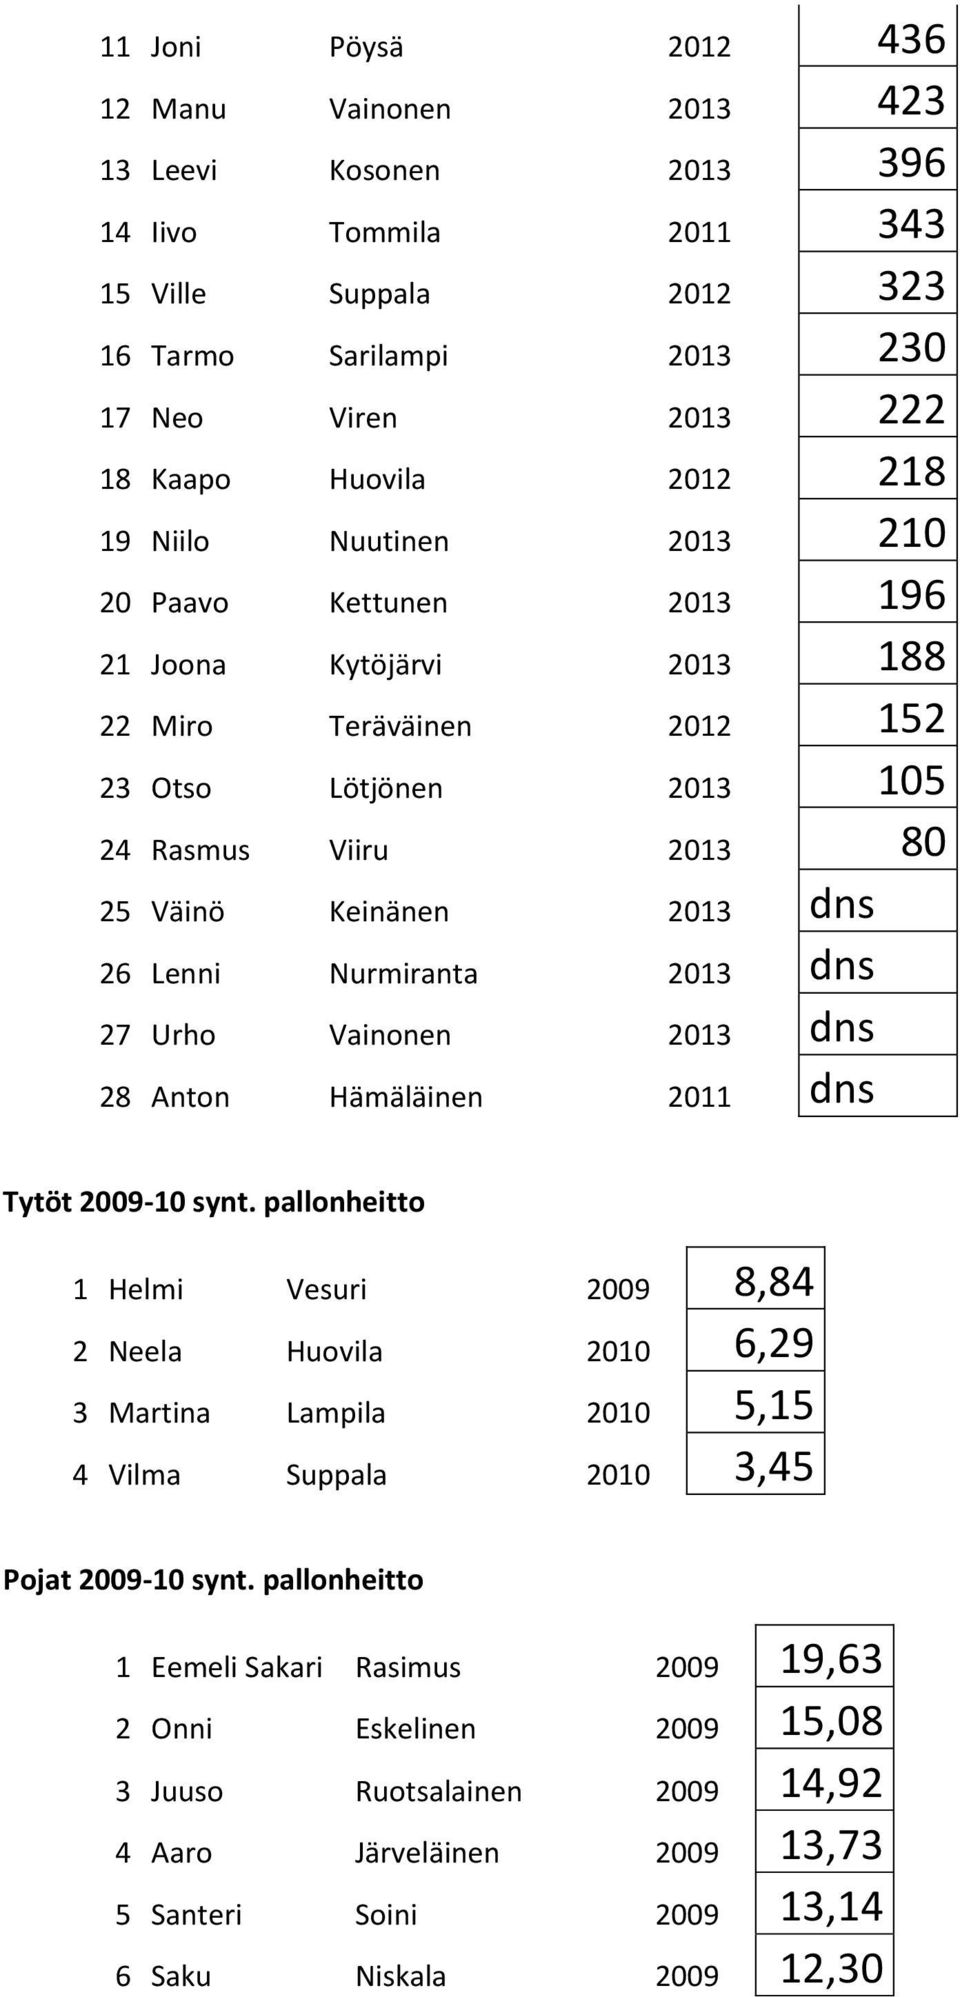 Nurmiranta 2013 dns 27 Urho Vainonen 2013 dns 28 Anton Hämäläinen 2011 dns Tytöt 2009-10 synt.